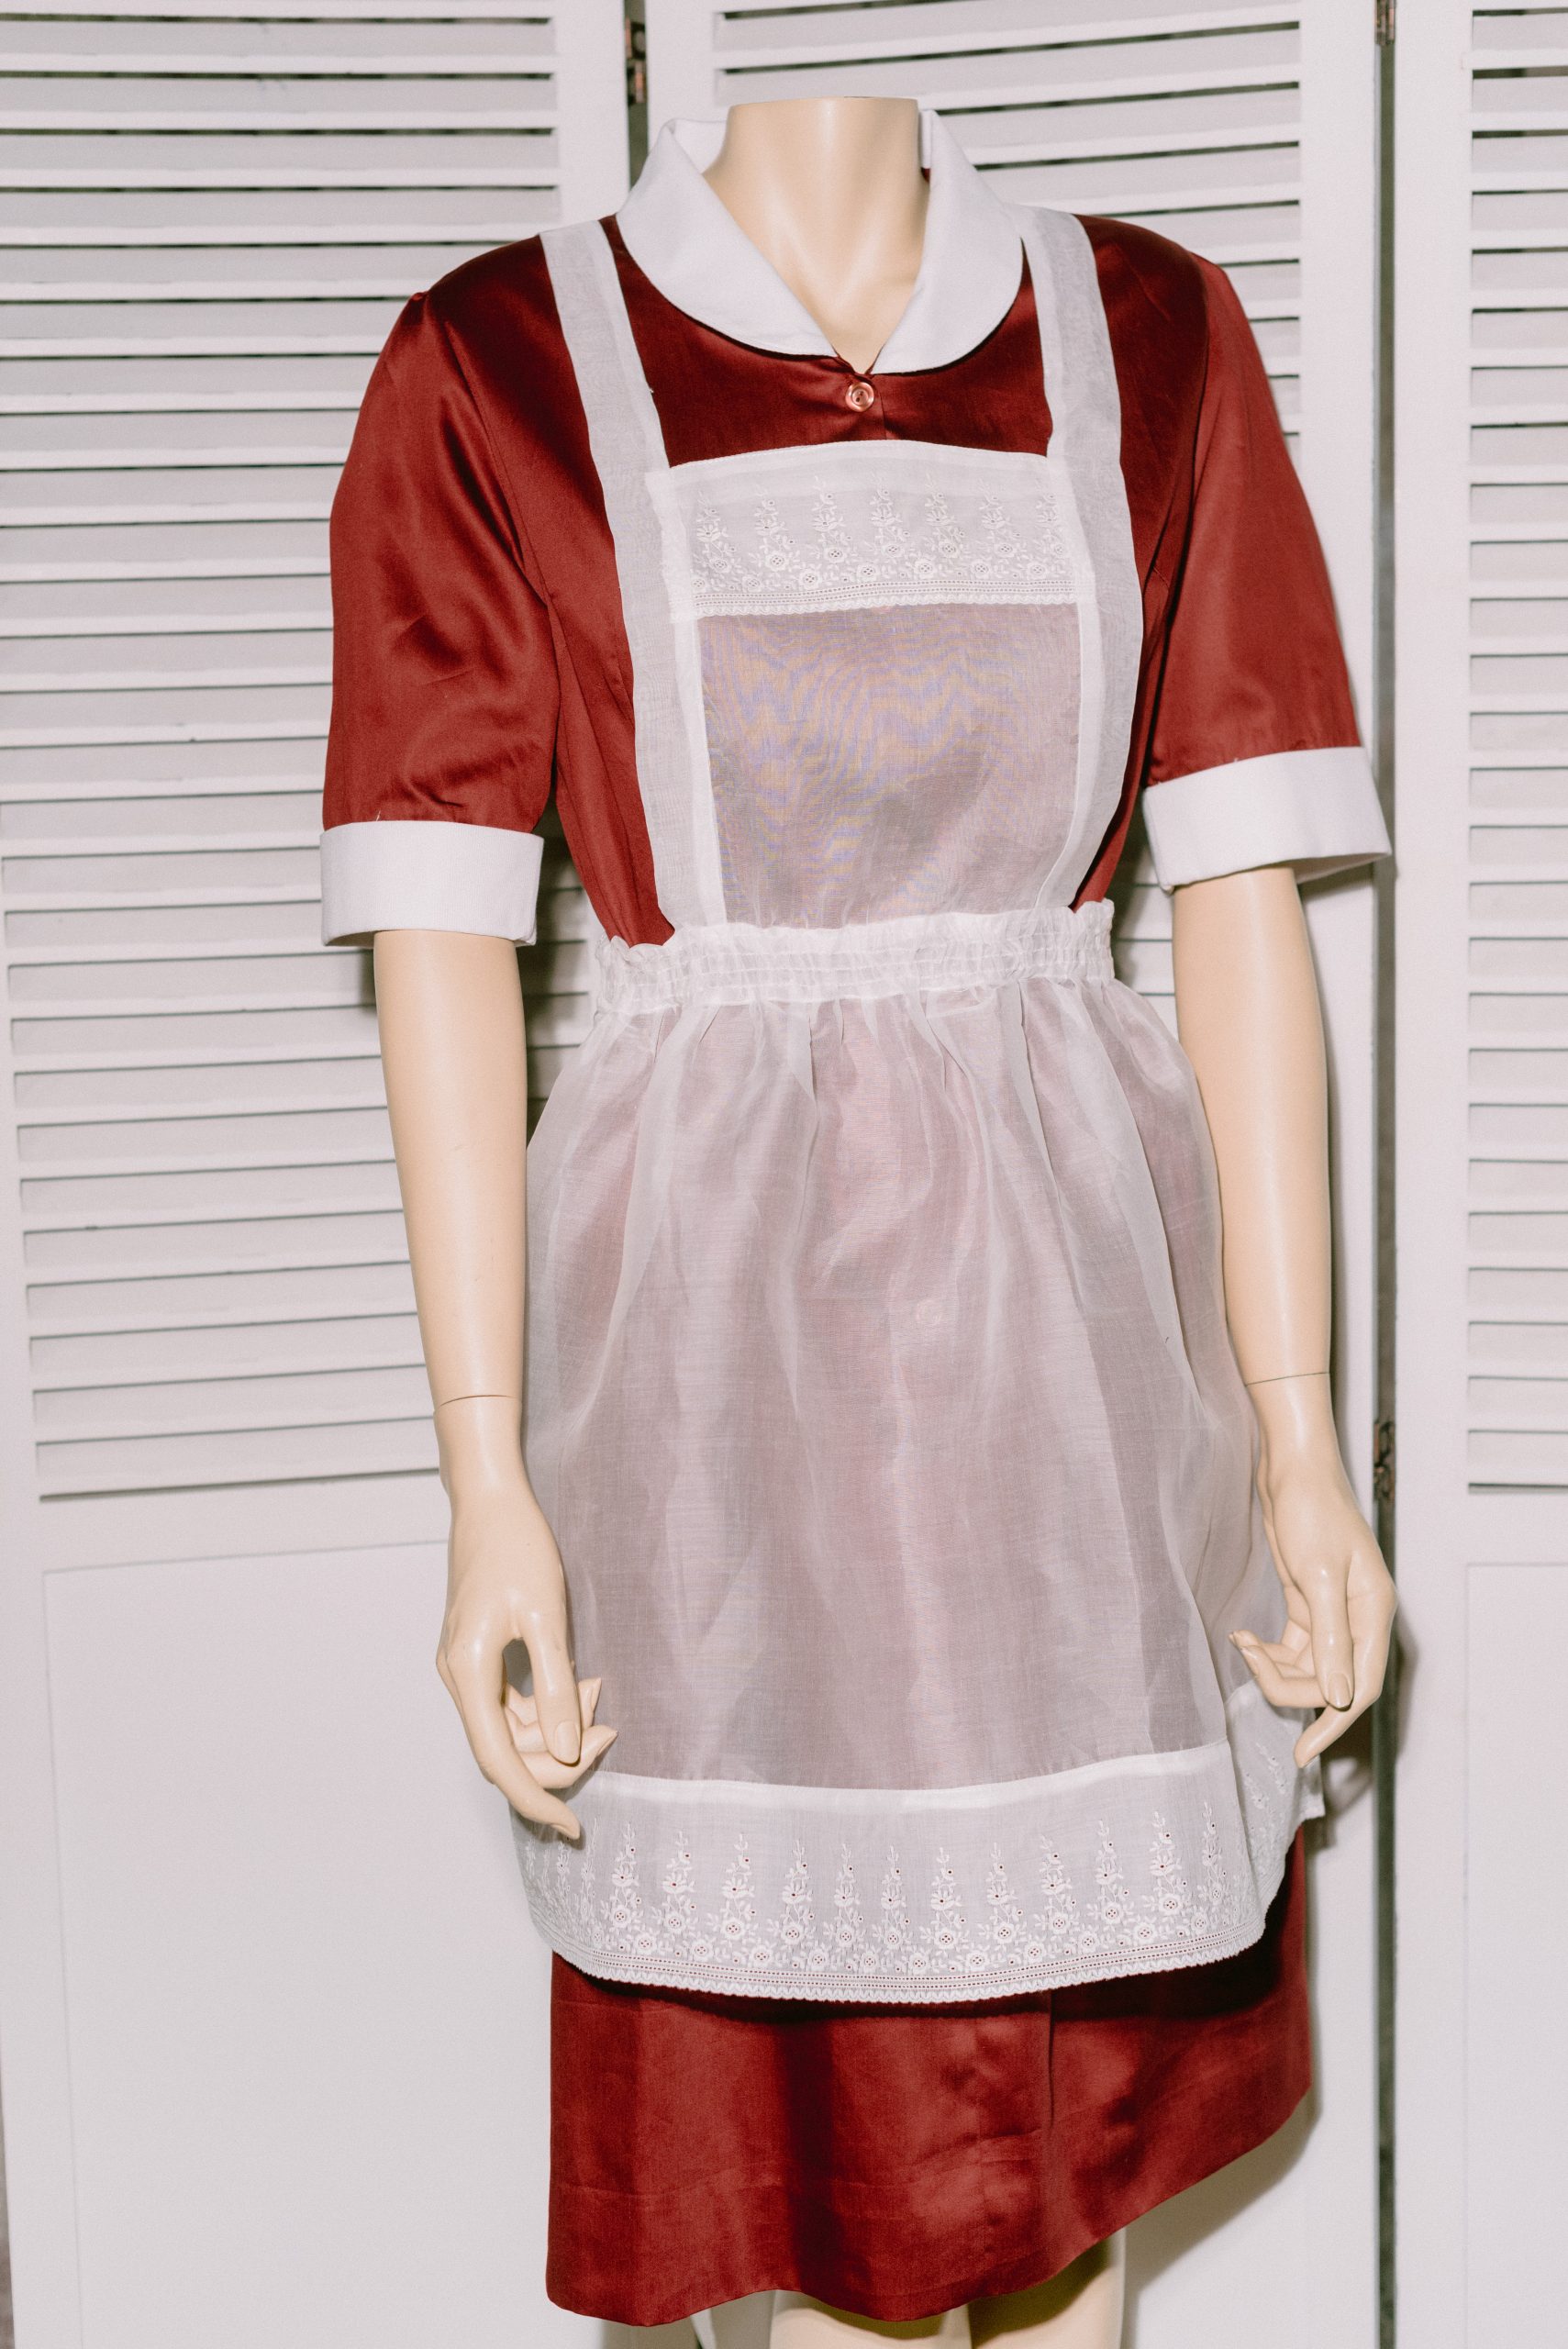 boracay maid uniform